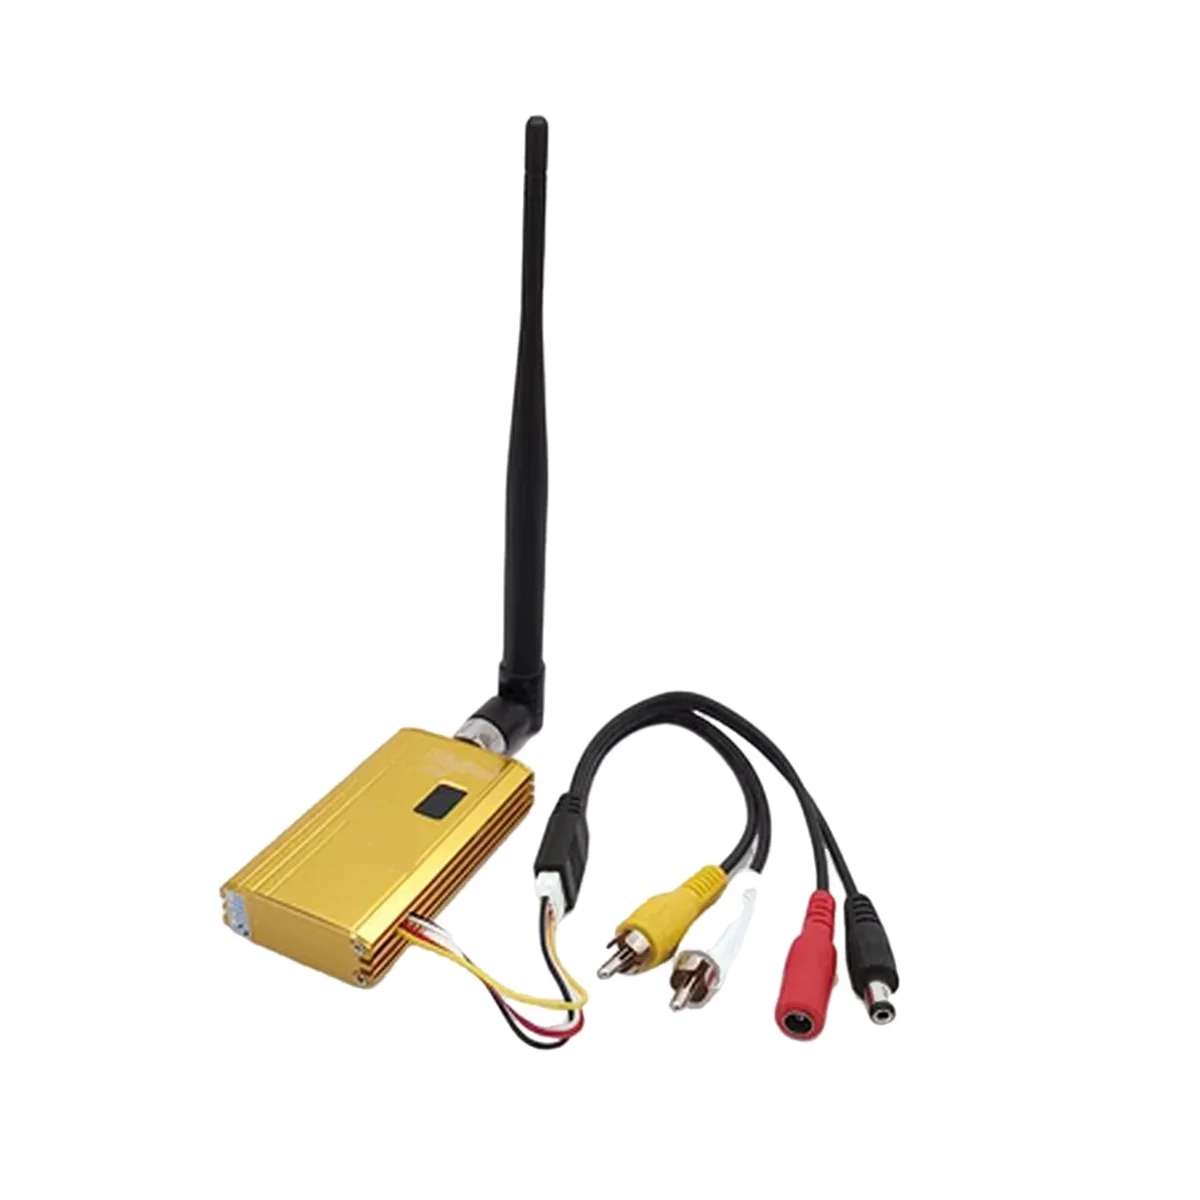 

Wireless FPV Transmitter+Receiver 1.2Ghz 1500MW 8CH AV Sender TV Audio Video Transmitter for QAV250 250 FPV Quadcopter